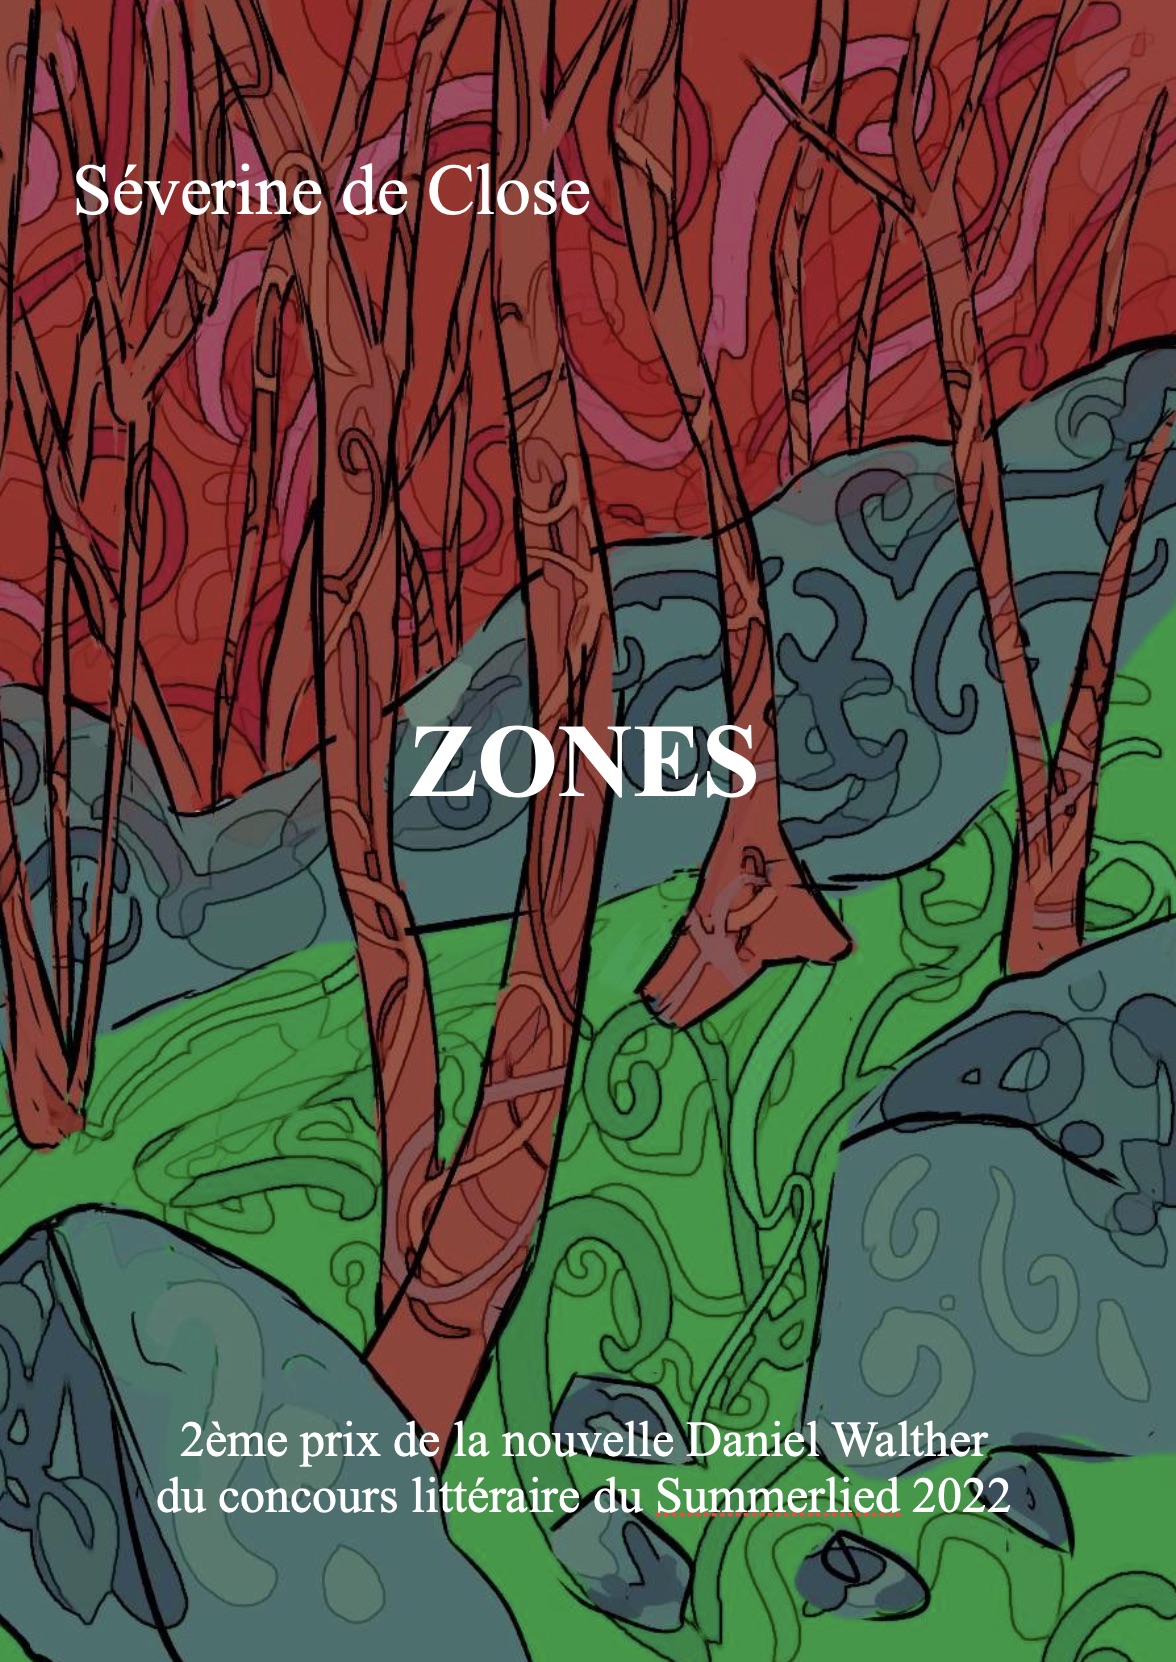 ZONES, une nouvelle de science-fiction de Séverine de Close